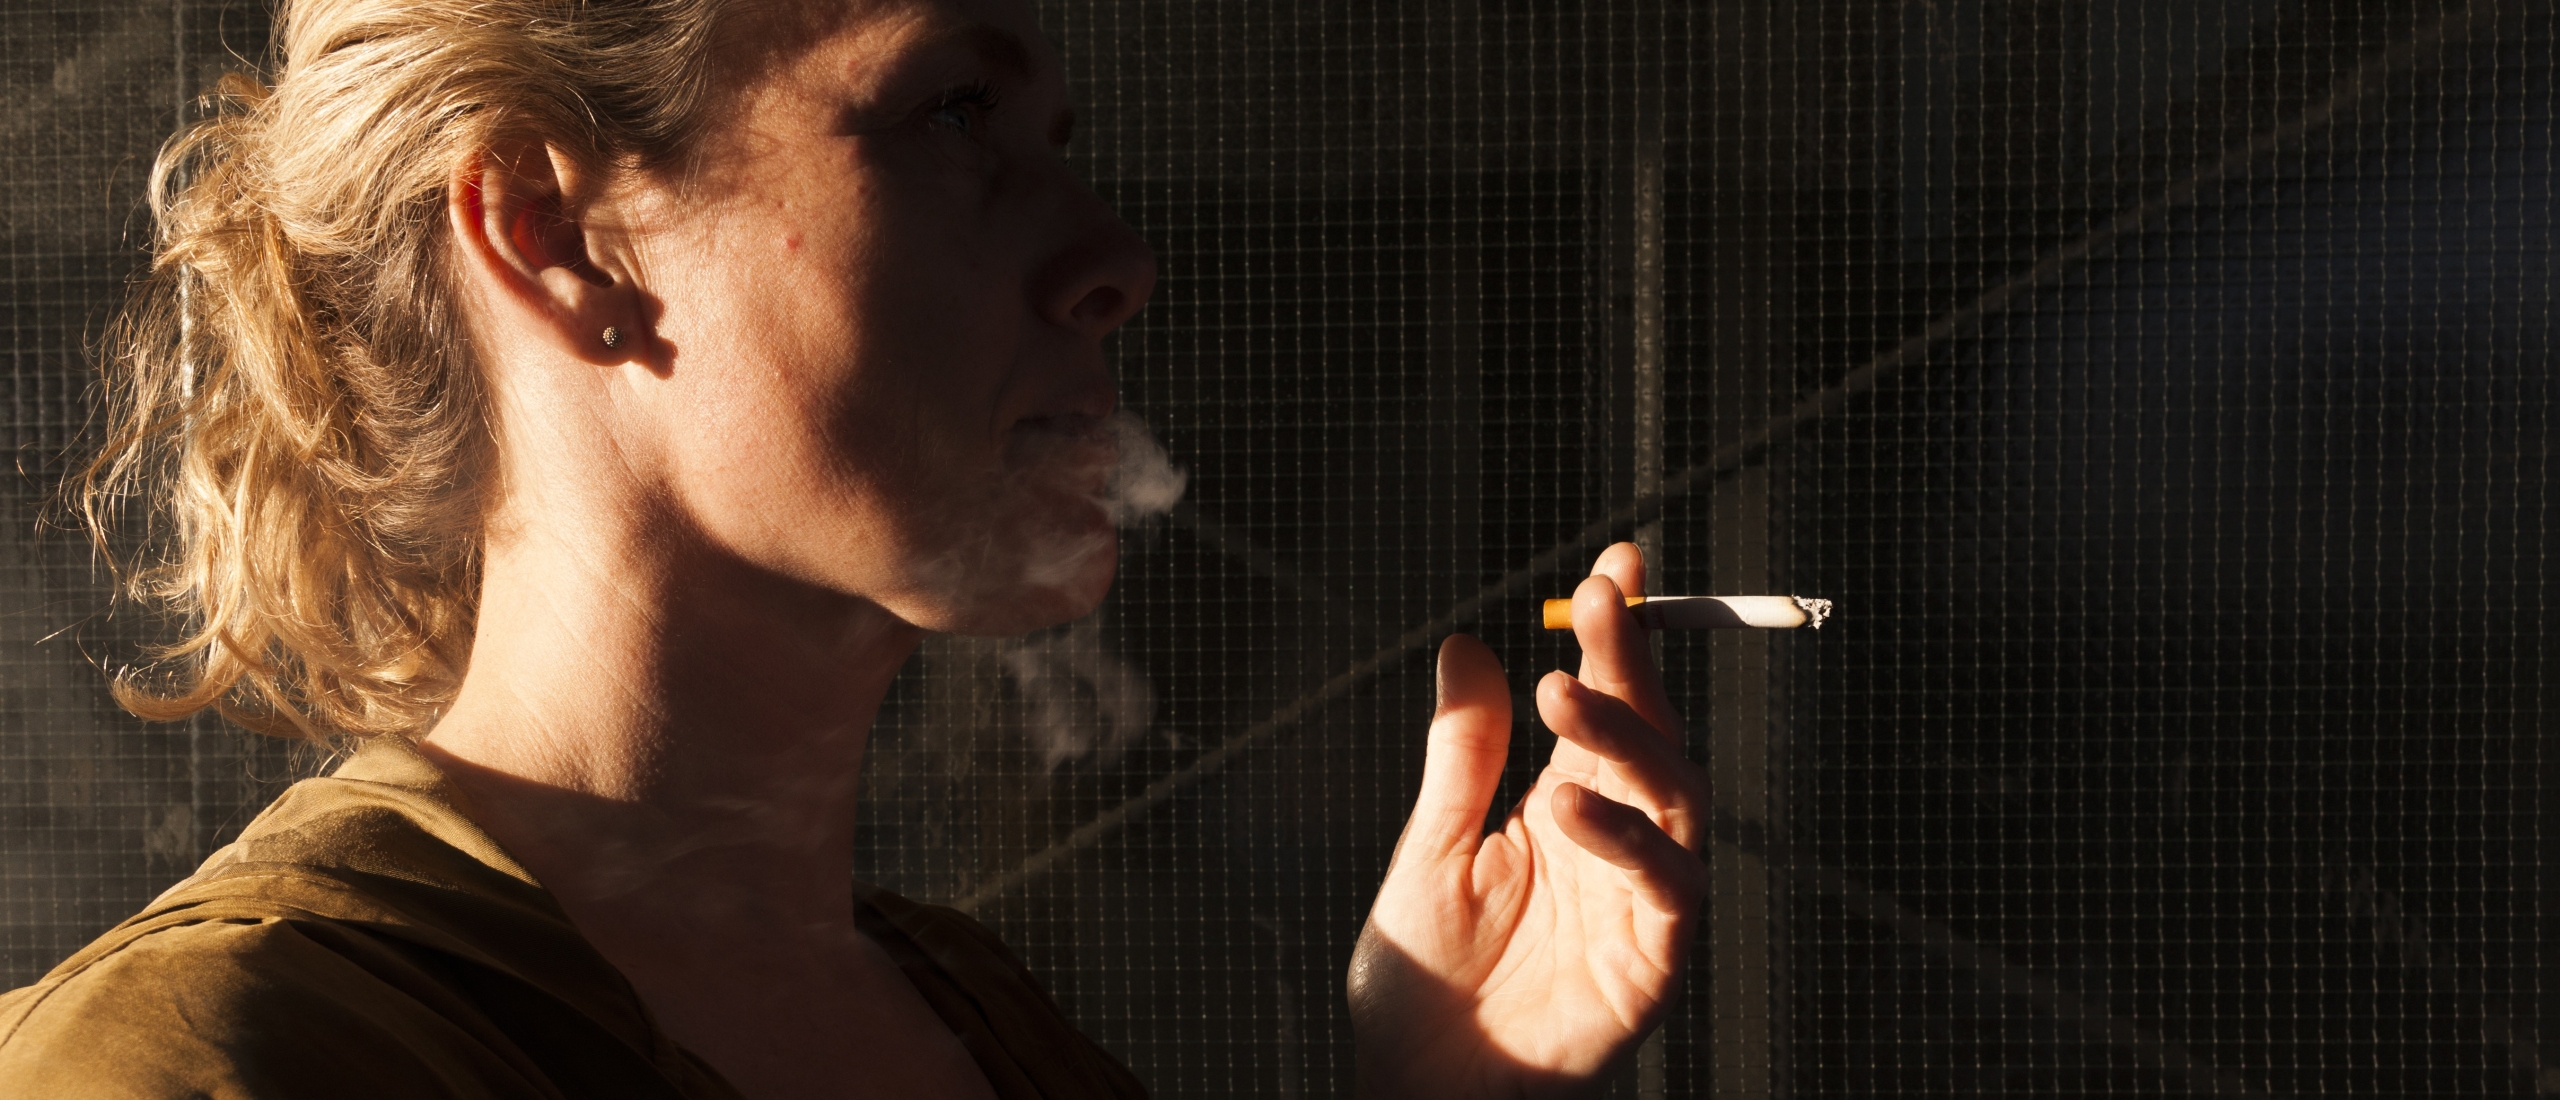 Nederlandse vrouwen krijgen relatief vaak kanker, mede door roken